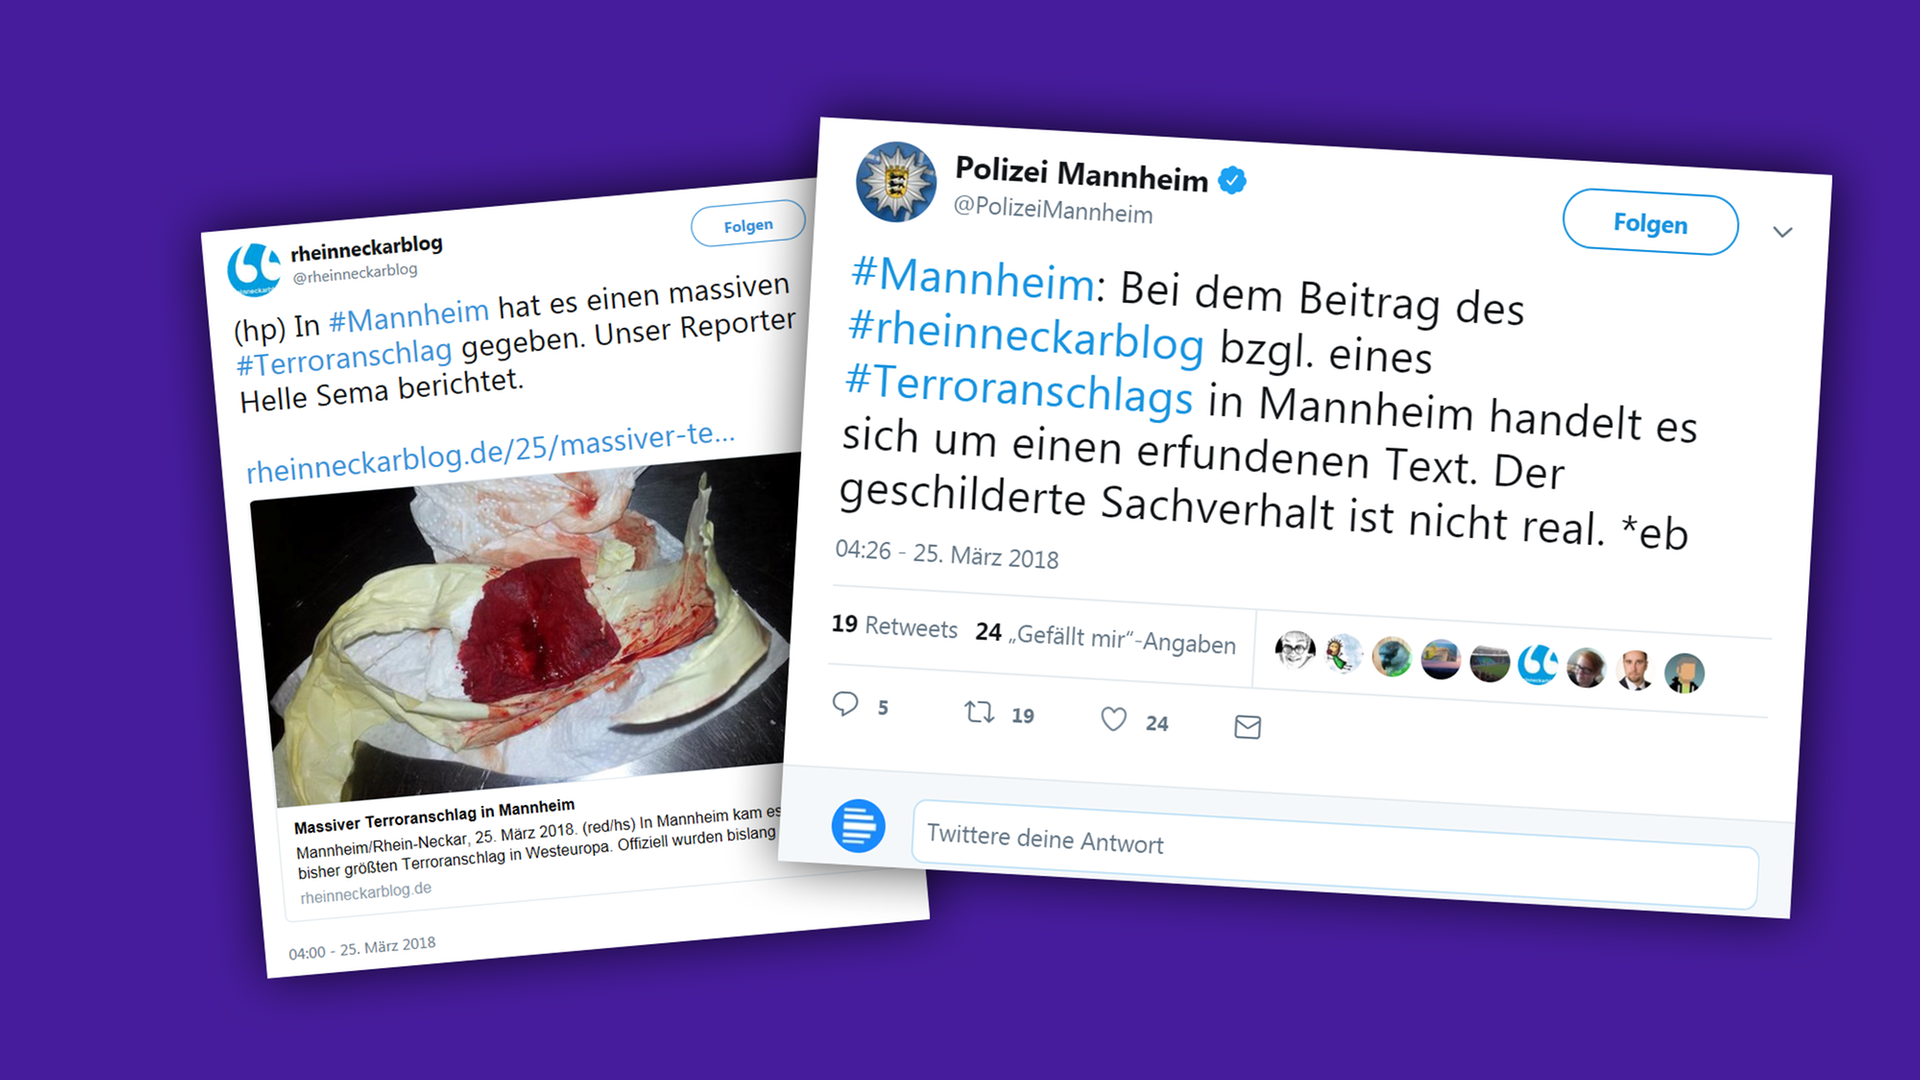 Die Montage zeigt zwei Tweets über einen vermeintlichen, aber erfundenen Anschlag in Mannheim, einer vom "Rheinneckarblog", einer von der Polizei Mannheim.